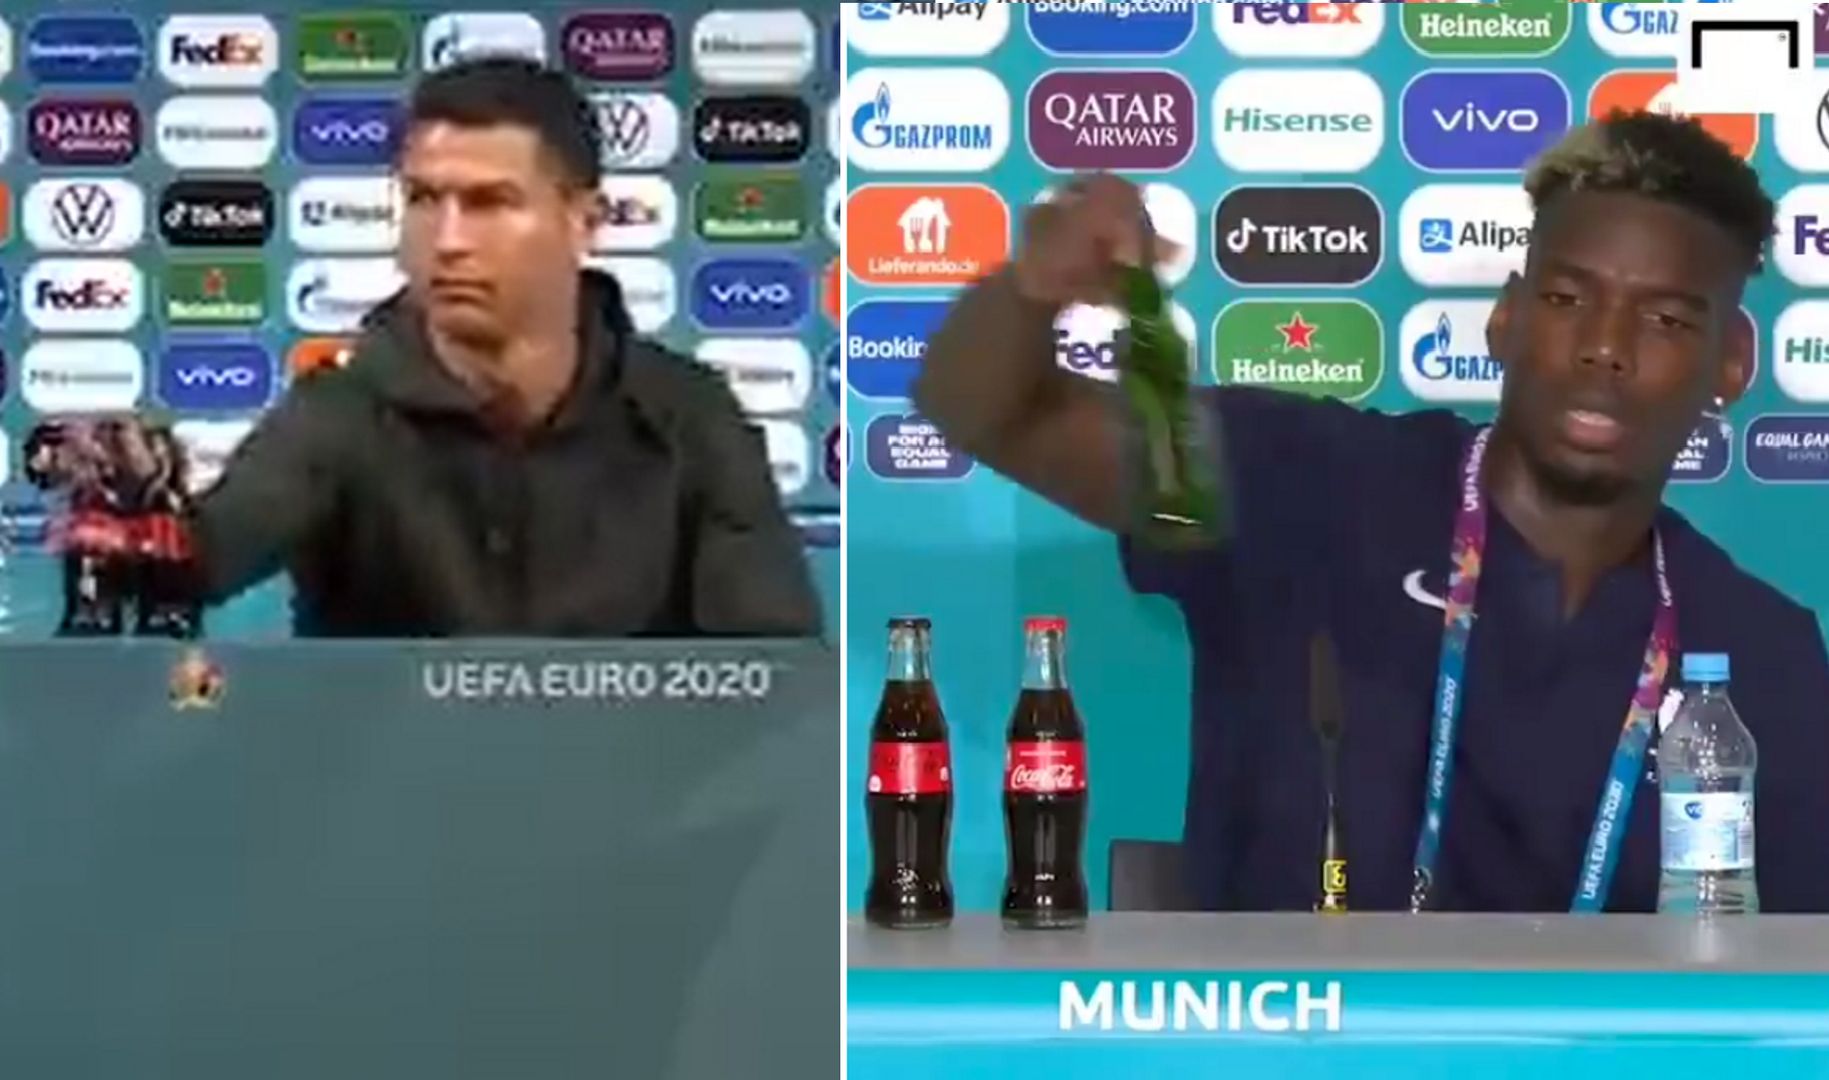 Ronaldo i Pogba zlekceważyli sponsorów. UEFA podjęła decyzję ws. kary